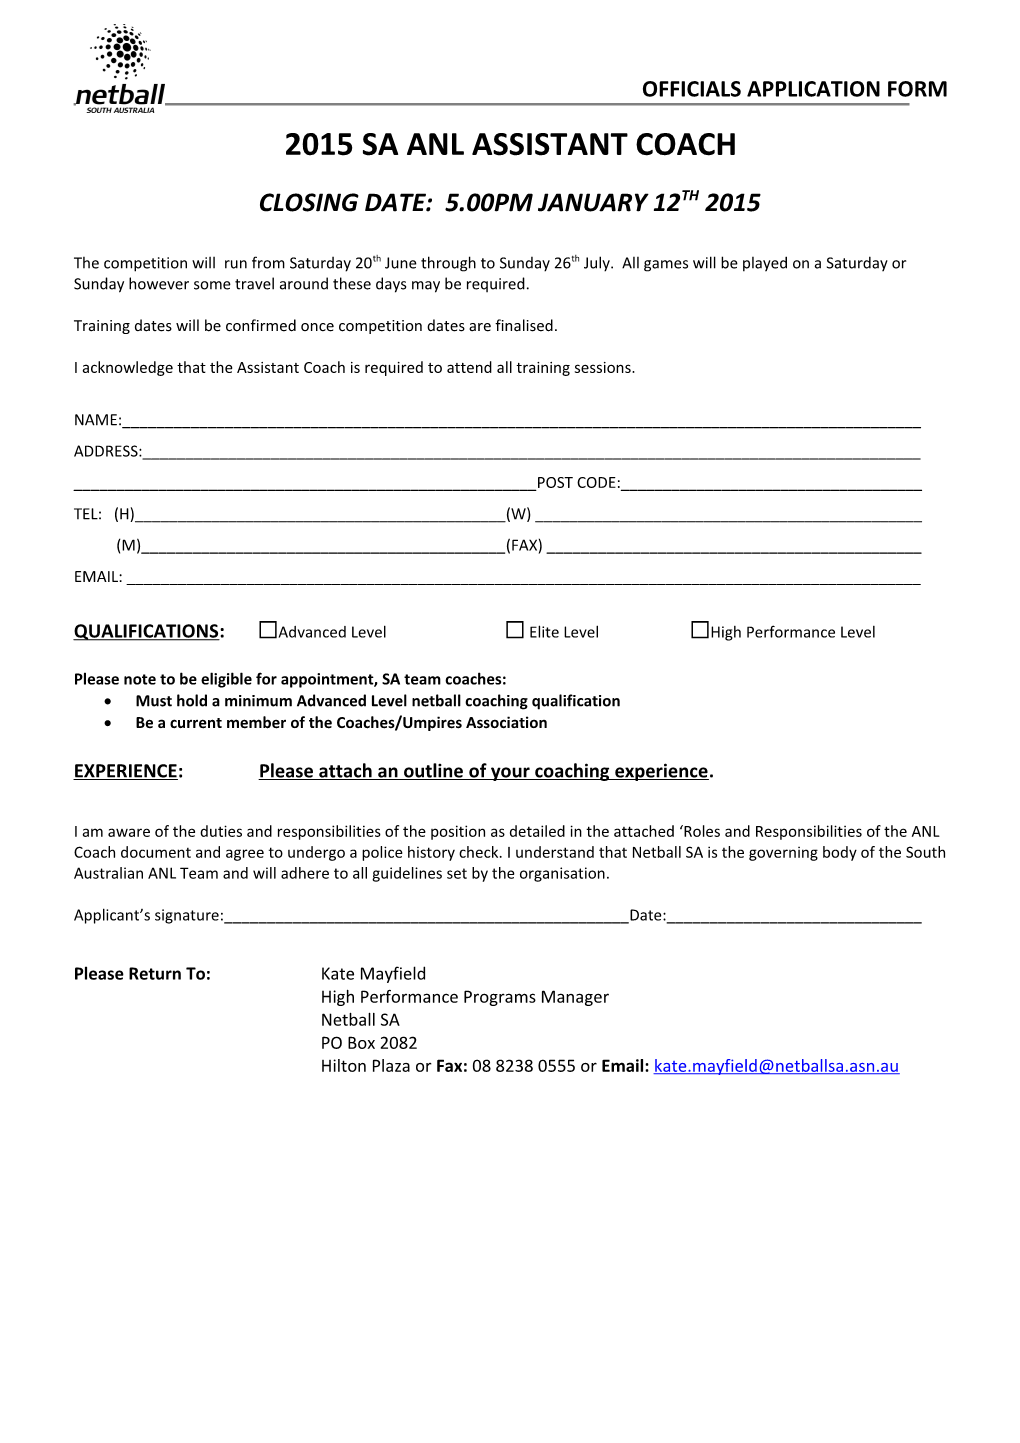 Officials Application Form